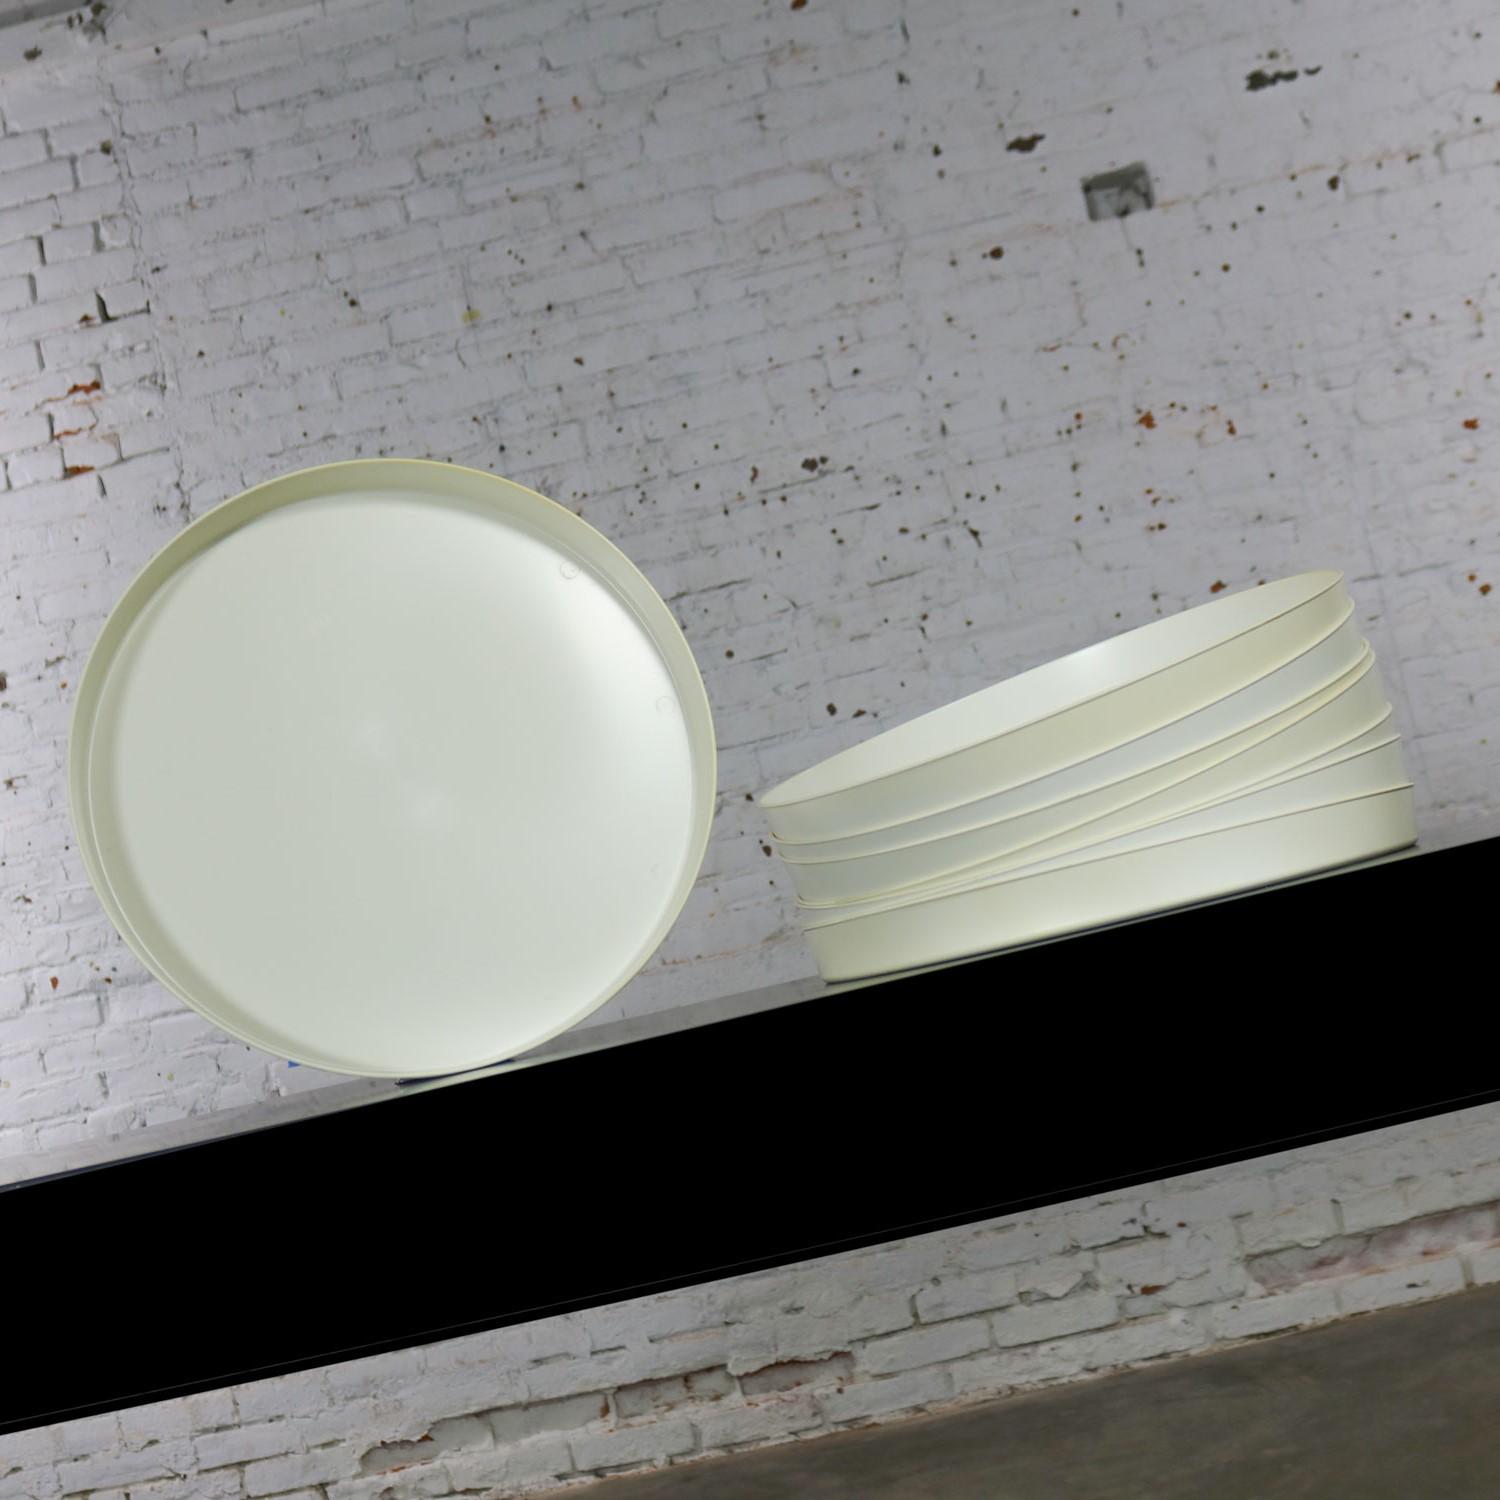 Américain The Modernity Trays Plateaux ronds en plastique blanc Splatter Platters by Sabe's en vente